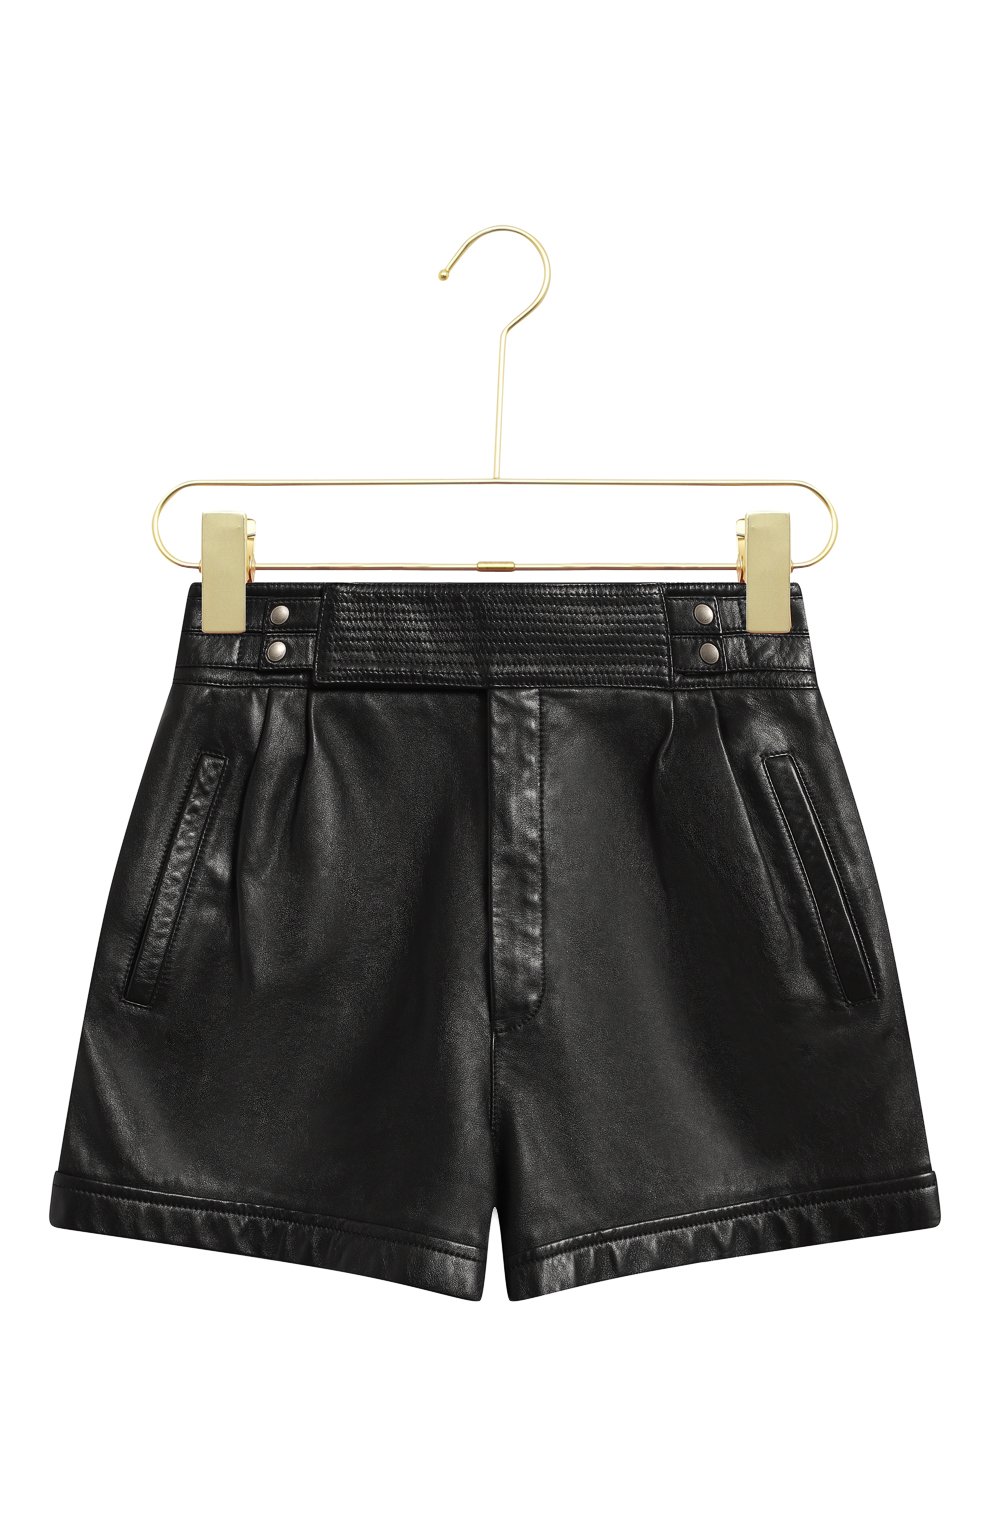 Кожаные шорты | Saint Laurent | Чёрный - 1